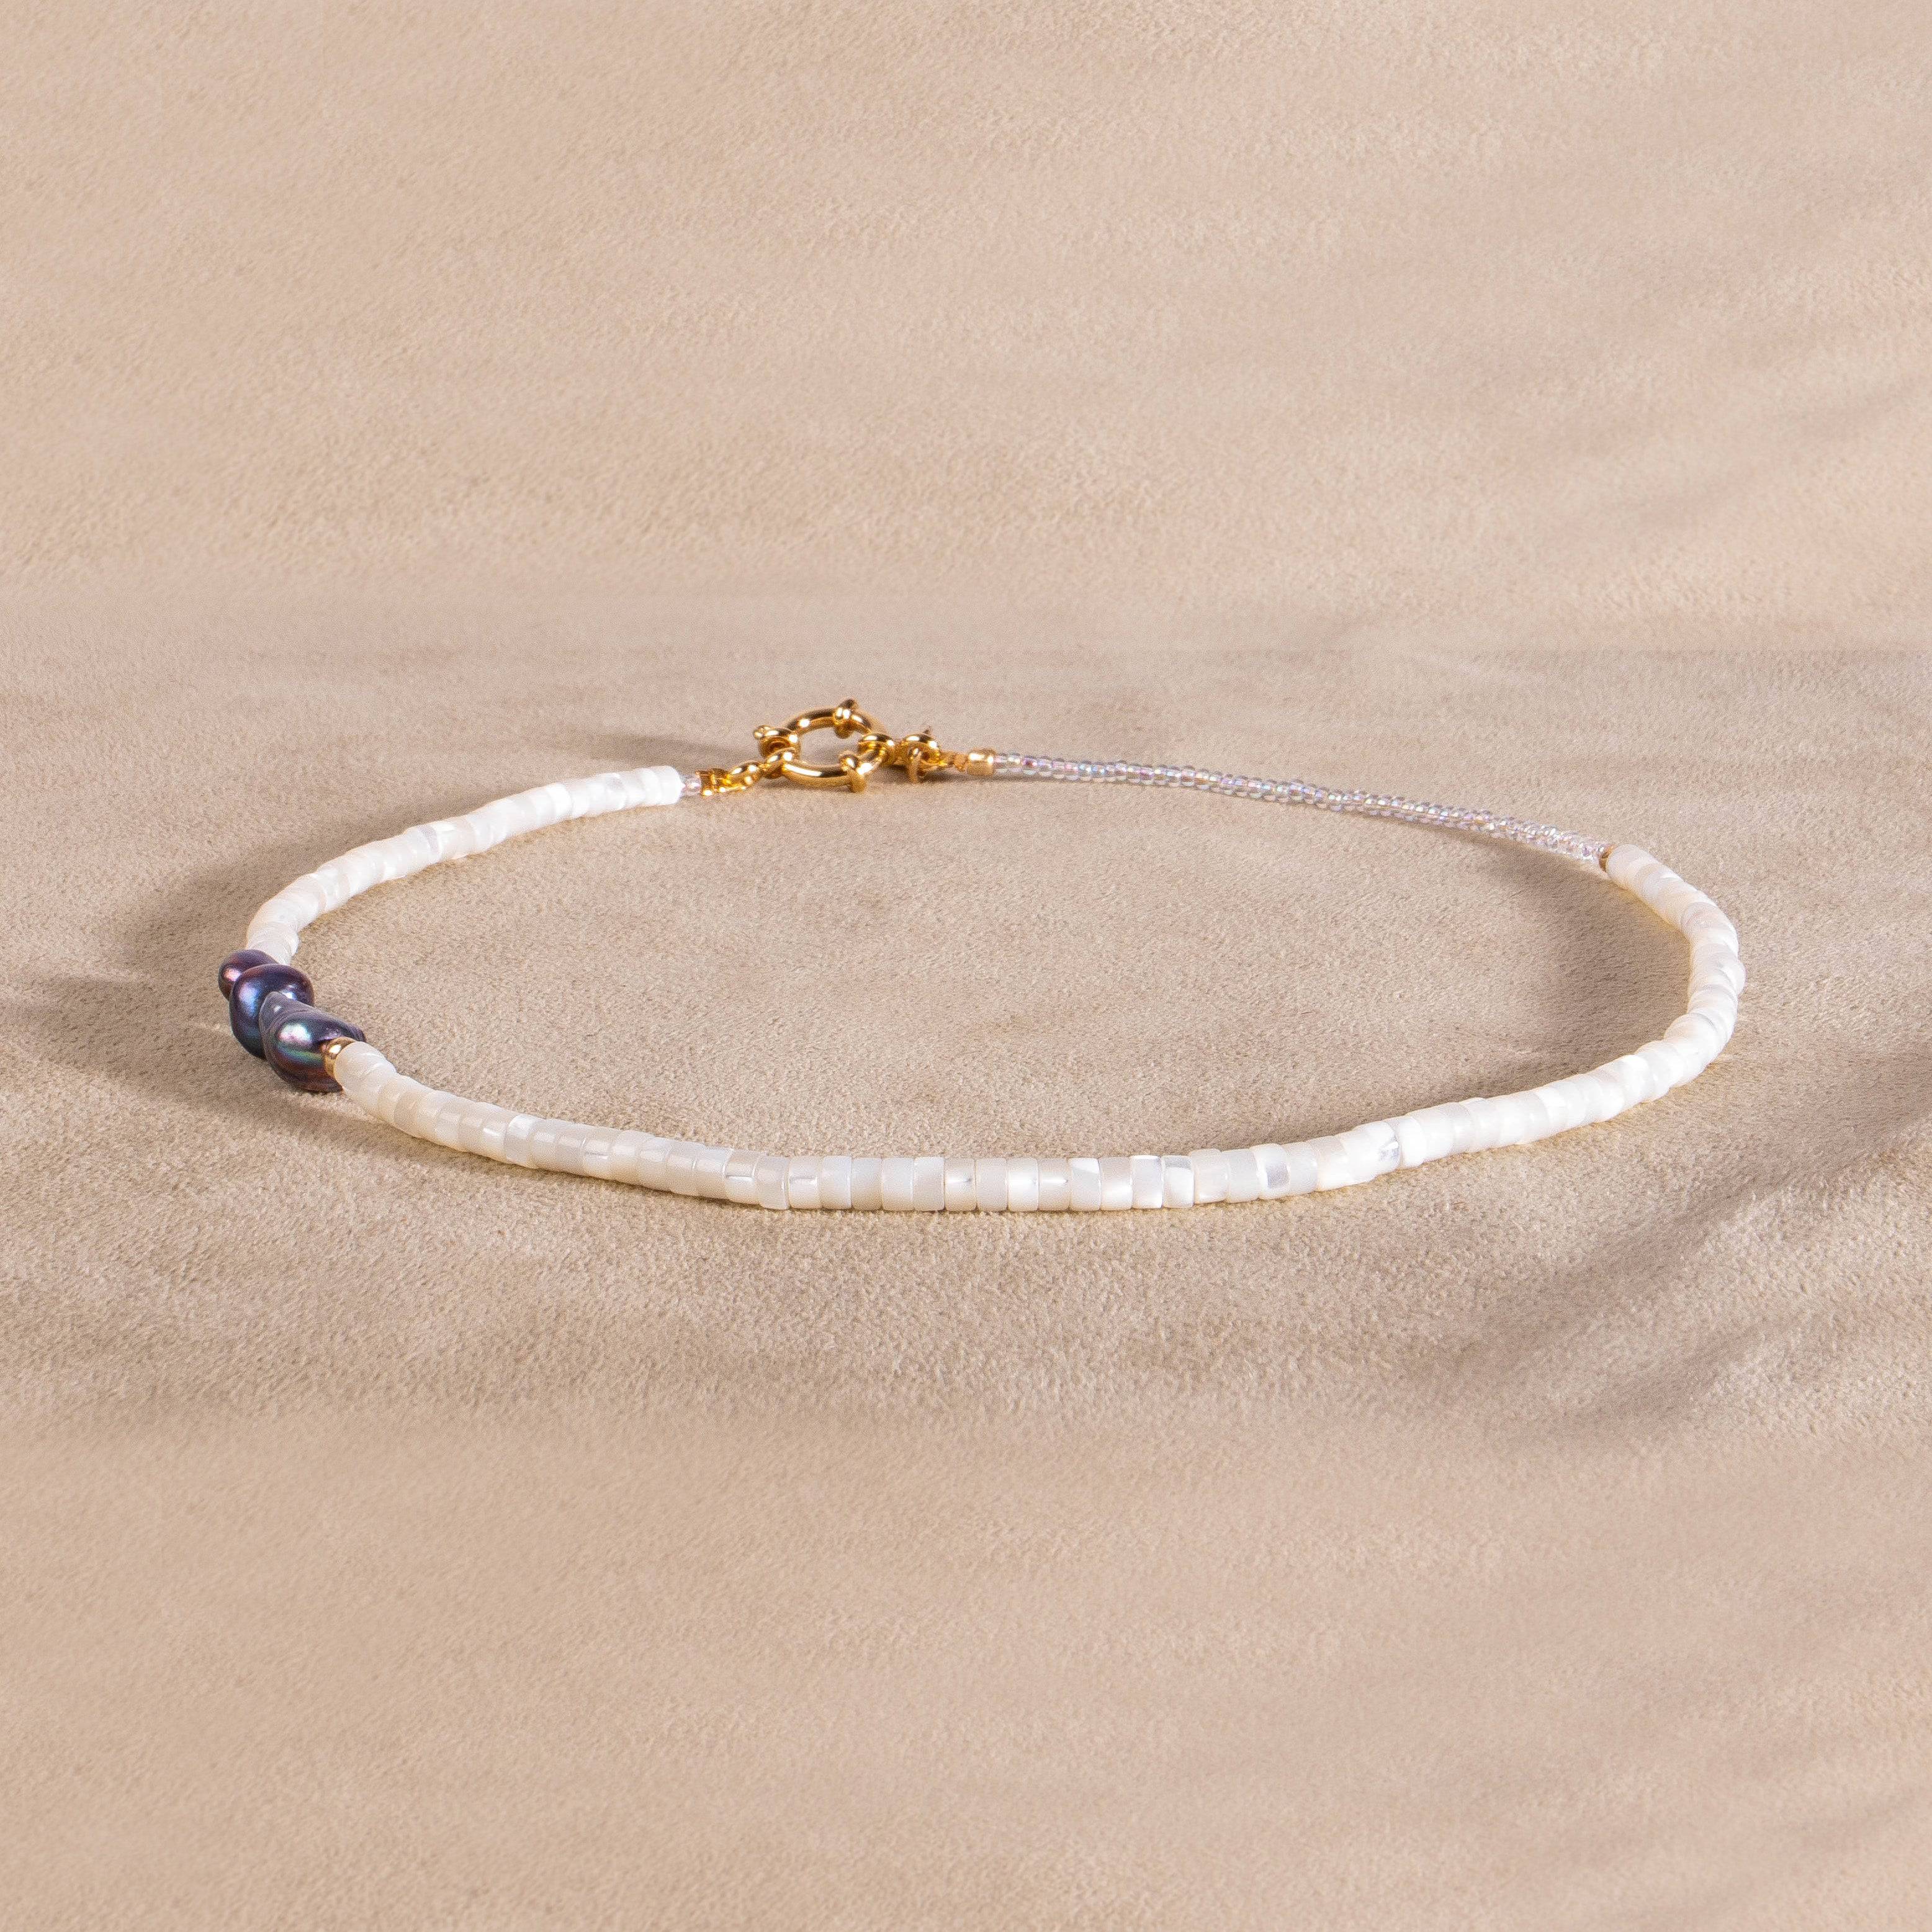 Halskette mit Perlmutt und blauer Perle vergoldet handgemacht - NooeBerlin